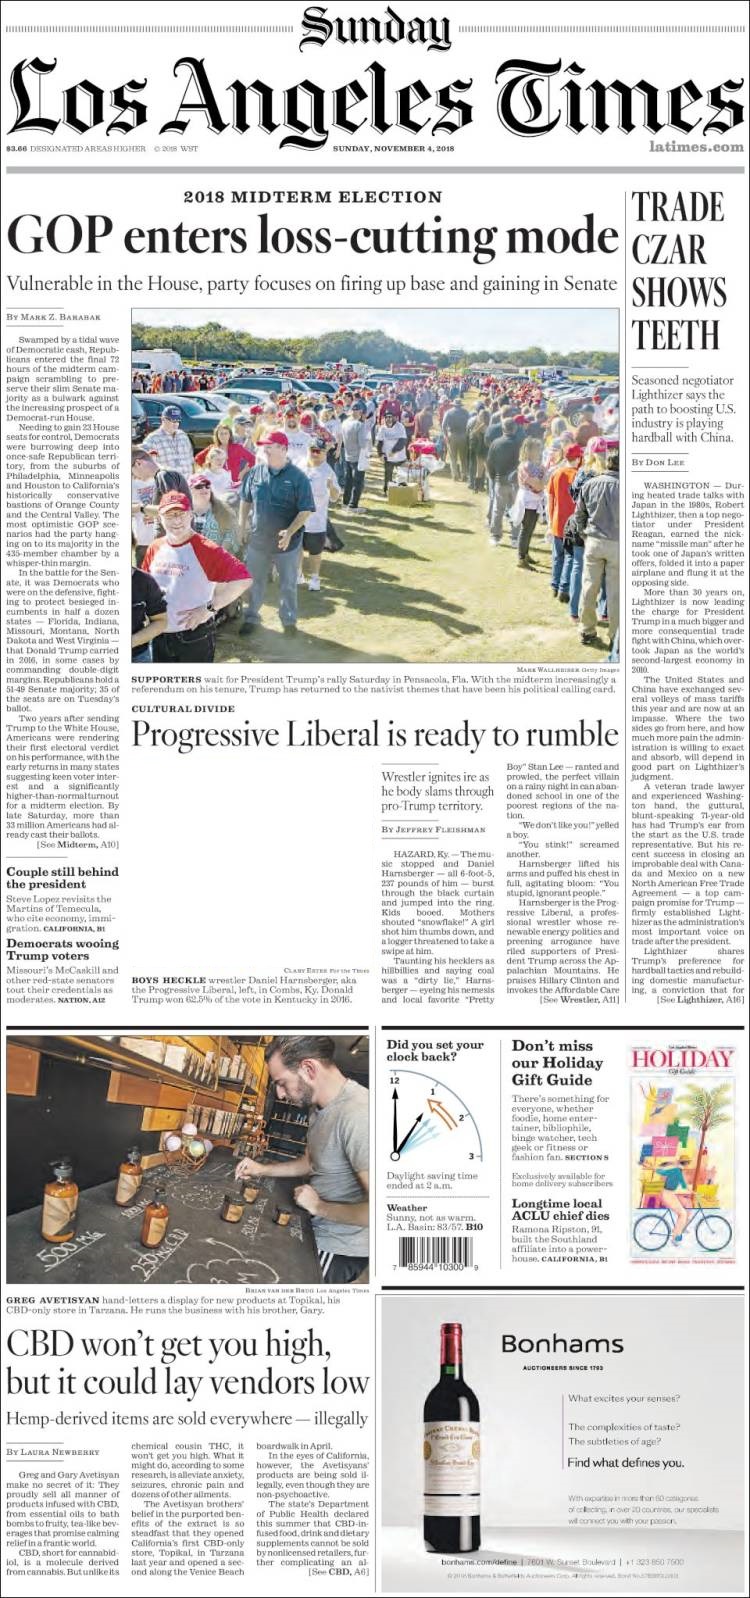 صفحه اول روزنامه لس آنجلس تایمز/ انتخابات میان دوره ای؛ جمهوری خواهان وارد وضعیت جلوی شکست را گرفتن شدند